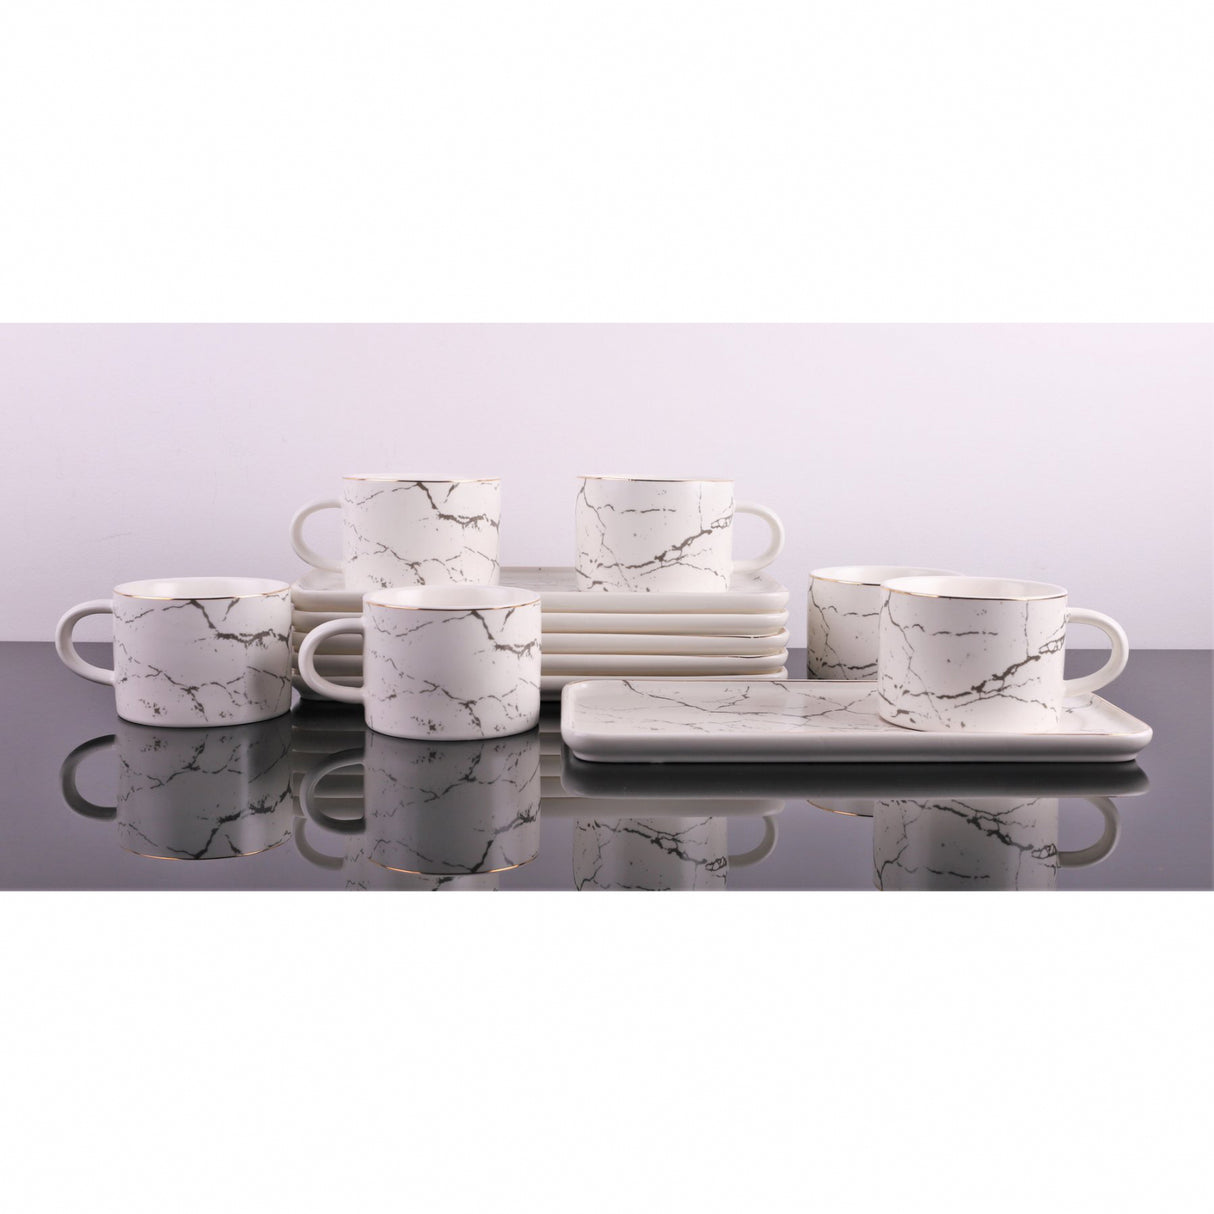 Set 6 cesti Cafea sau Ceai cu farfurioare incluse, Ceramica fina, Model Marmura Alba